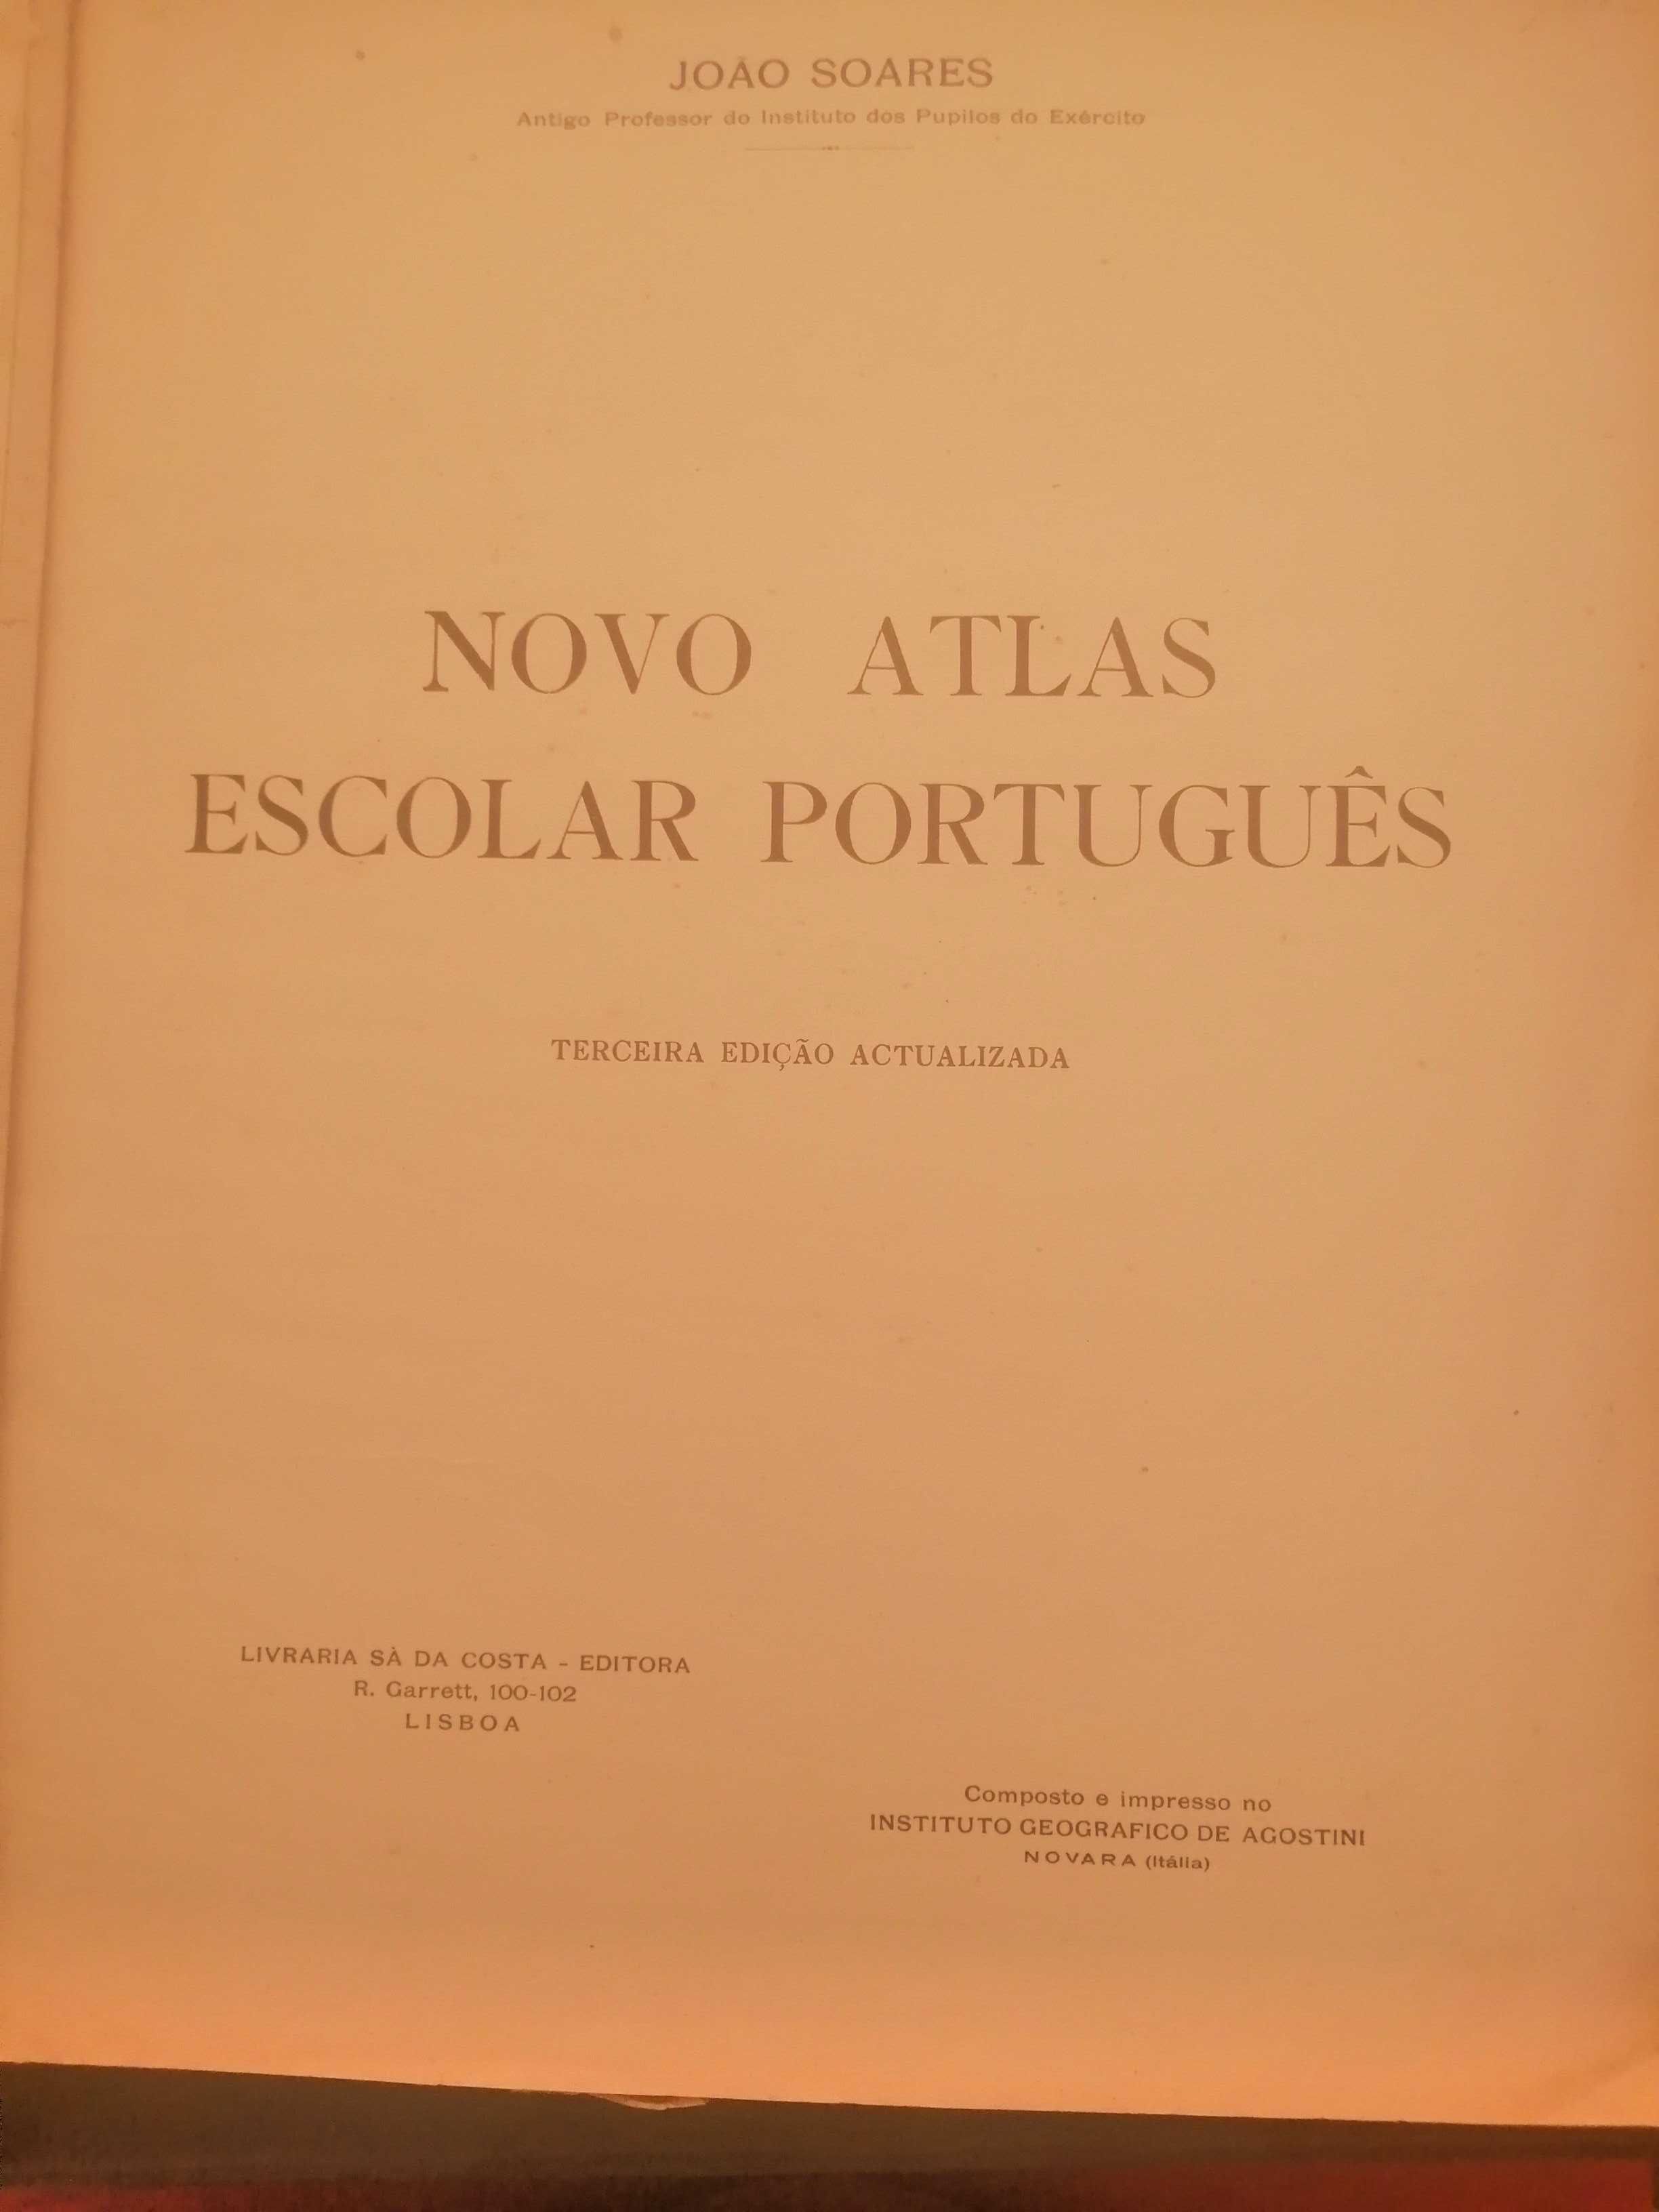 Novo Atlas escolar português 1949